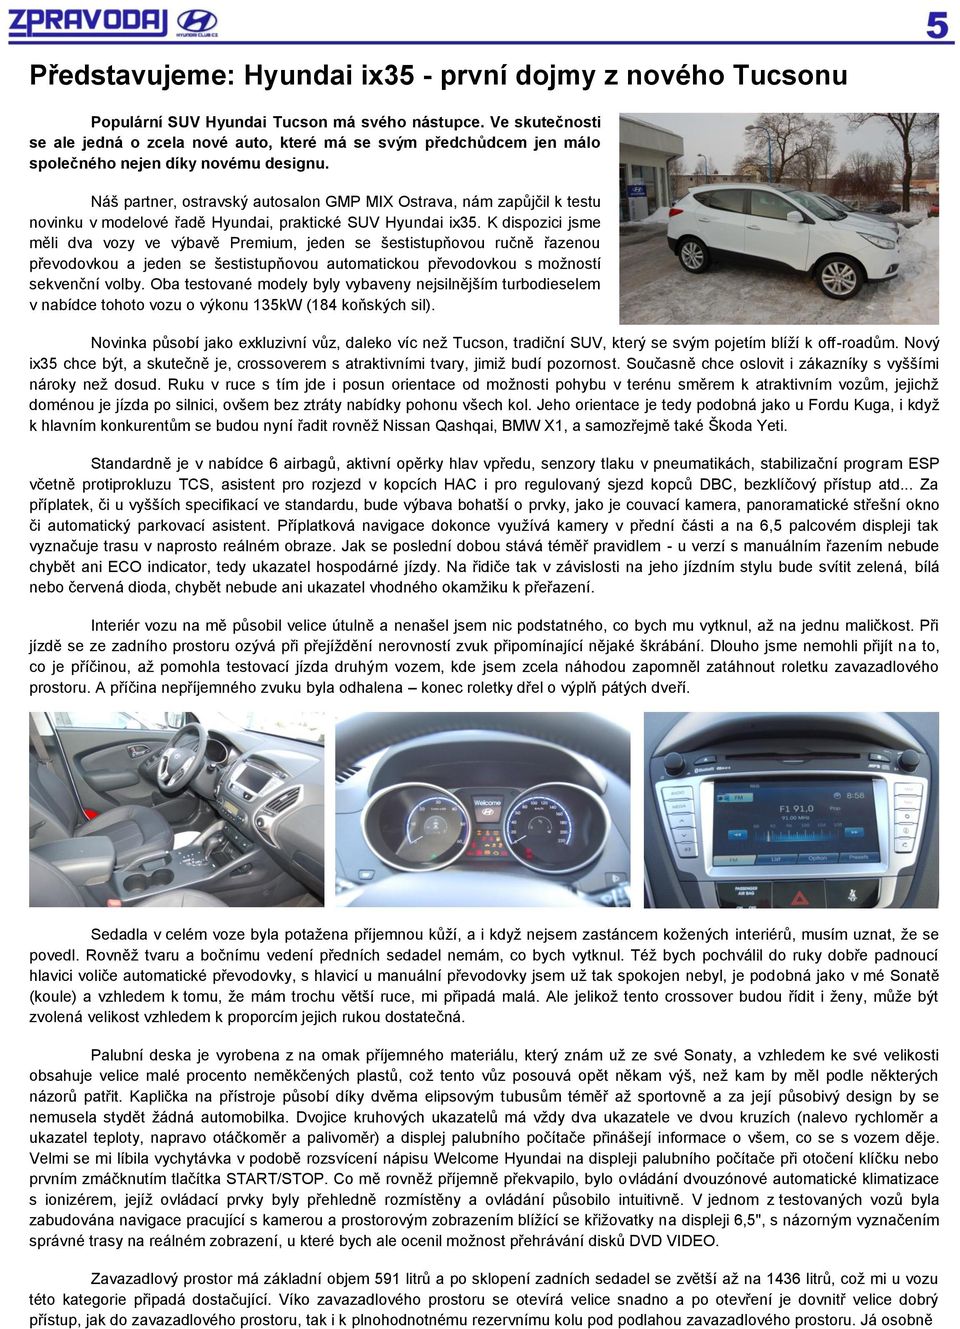 Náš partner, ostravský autosalon GMP MIX Ostrava, nám zapůjčil k testu novinku v modelové řadě Hyundai, praktické SUV Hyundai ix35.